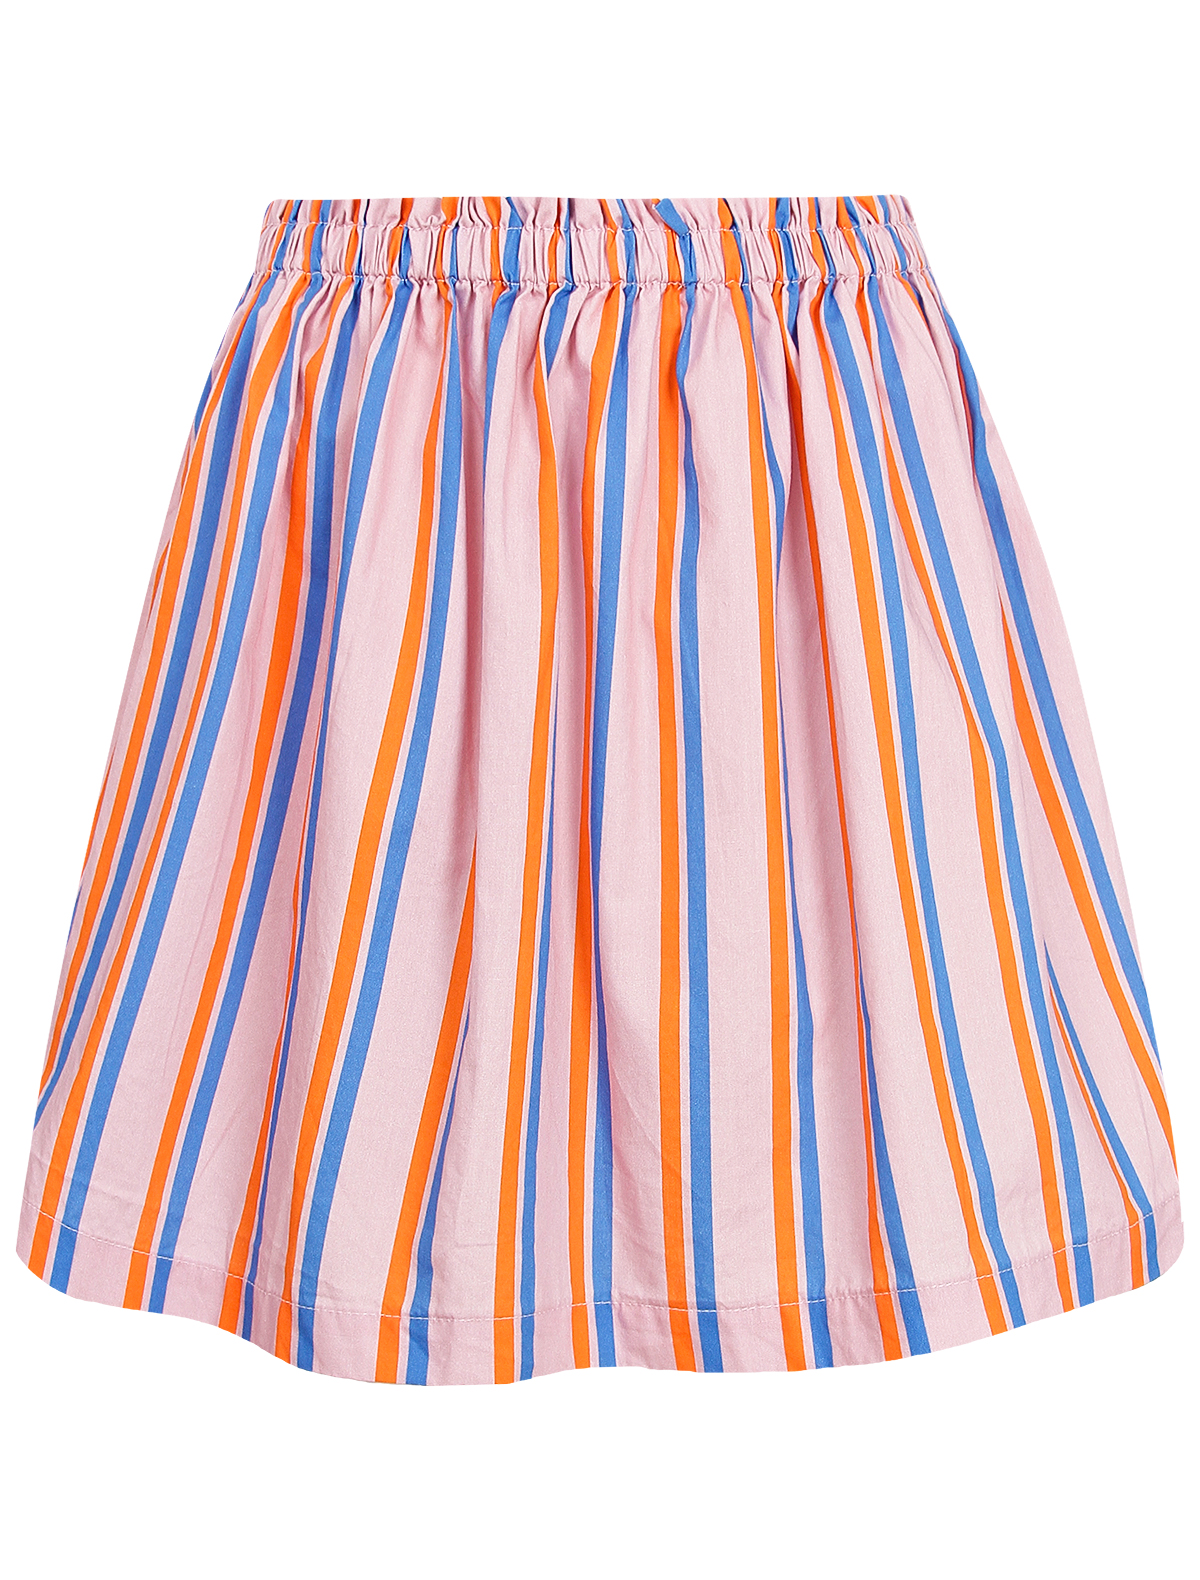 юбка tinycottons для девочки, разноцветная